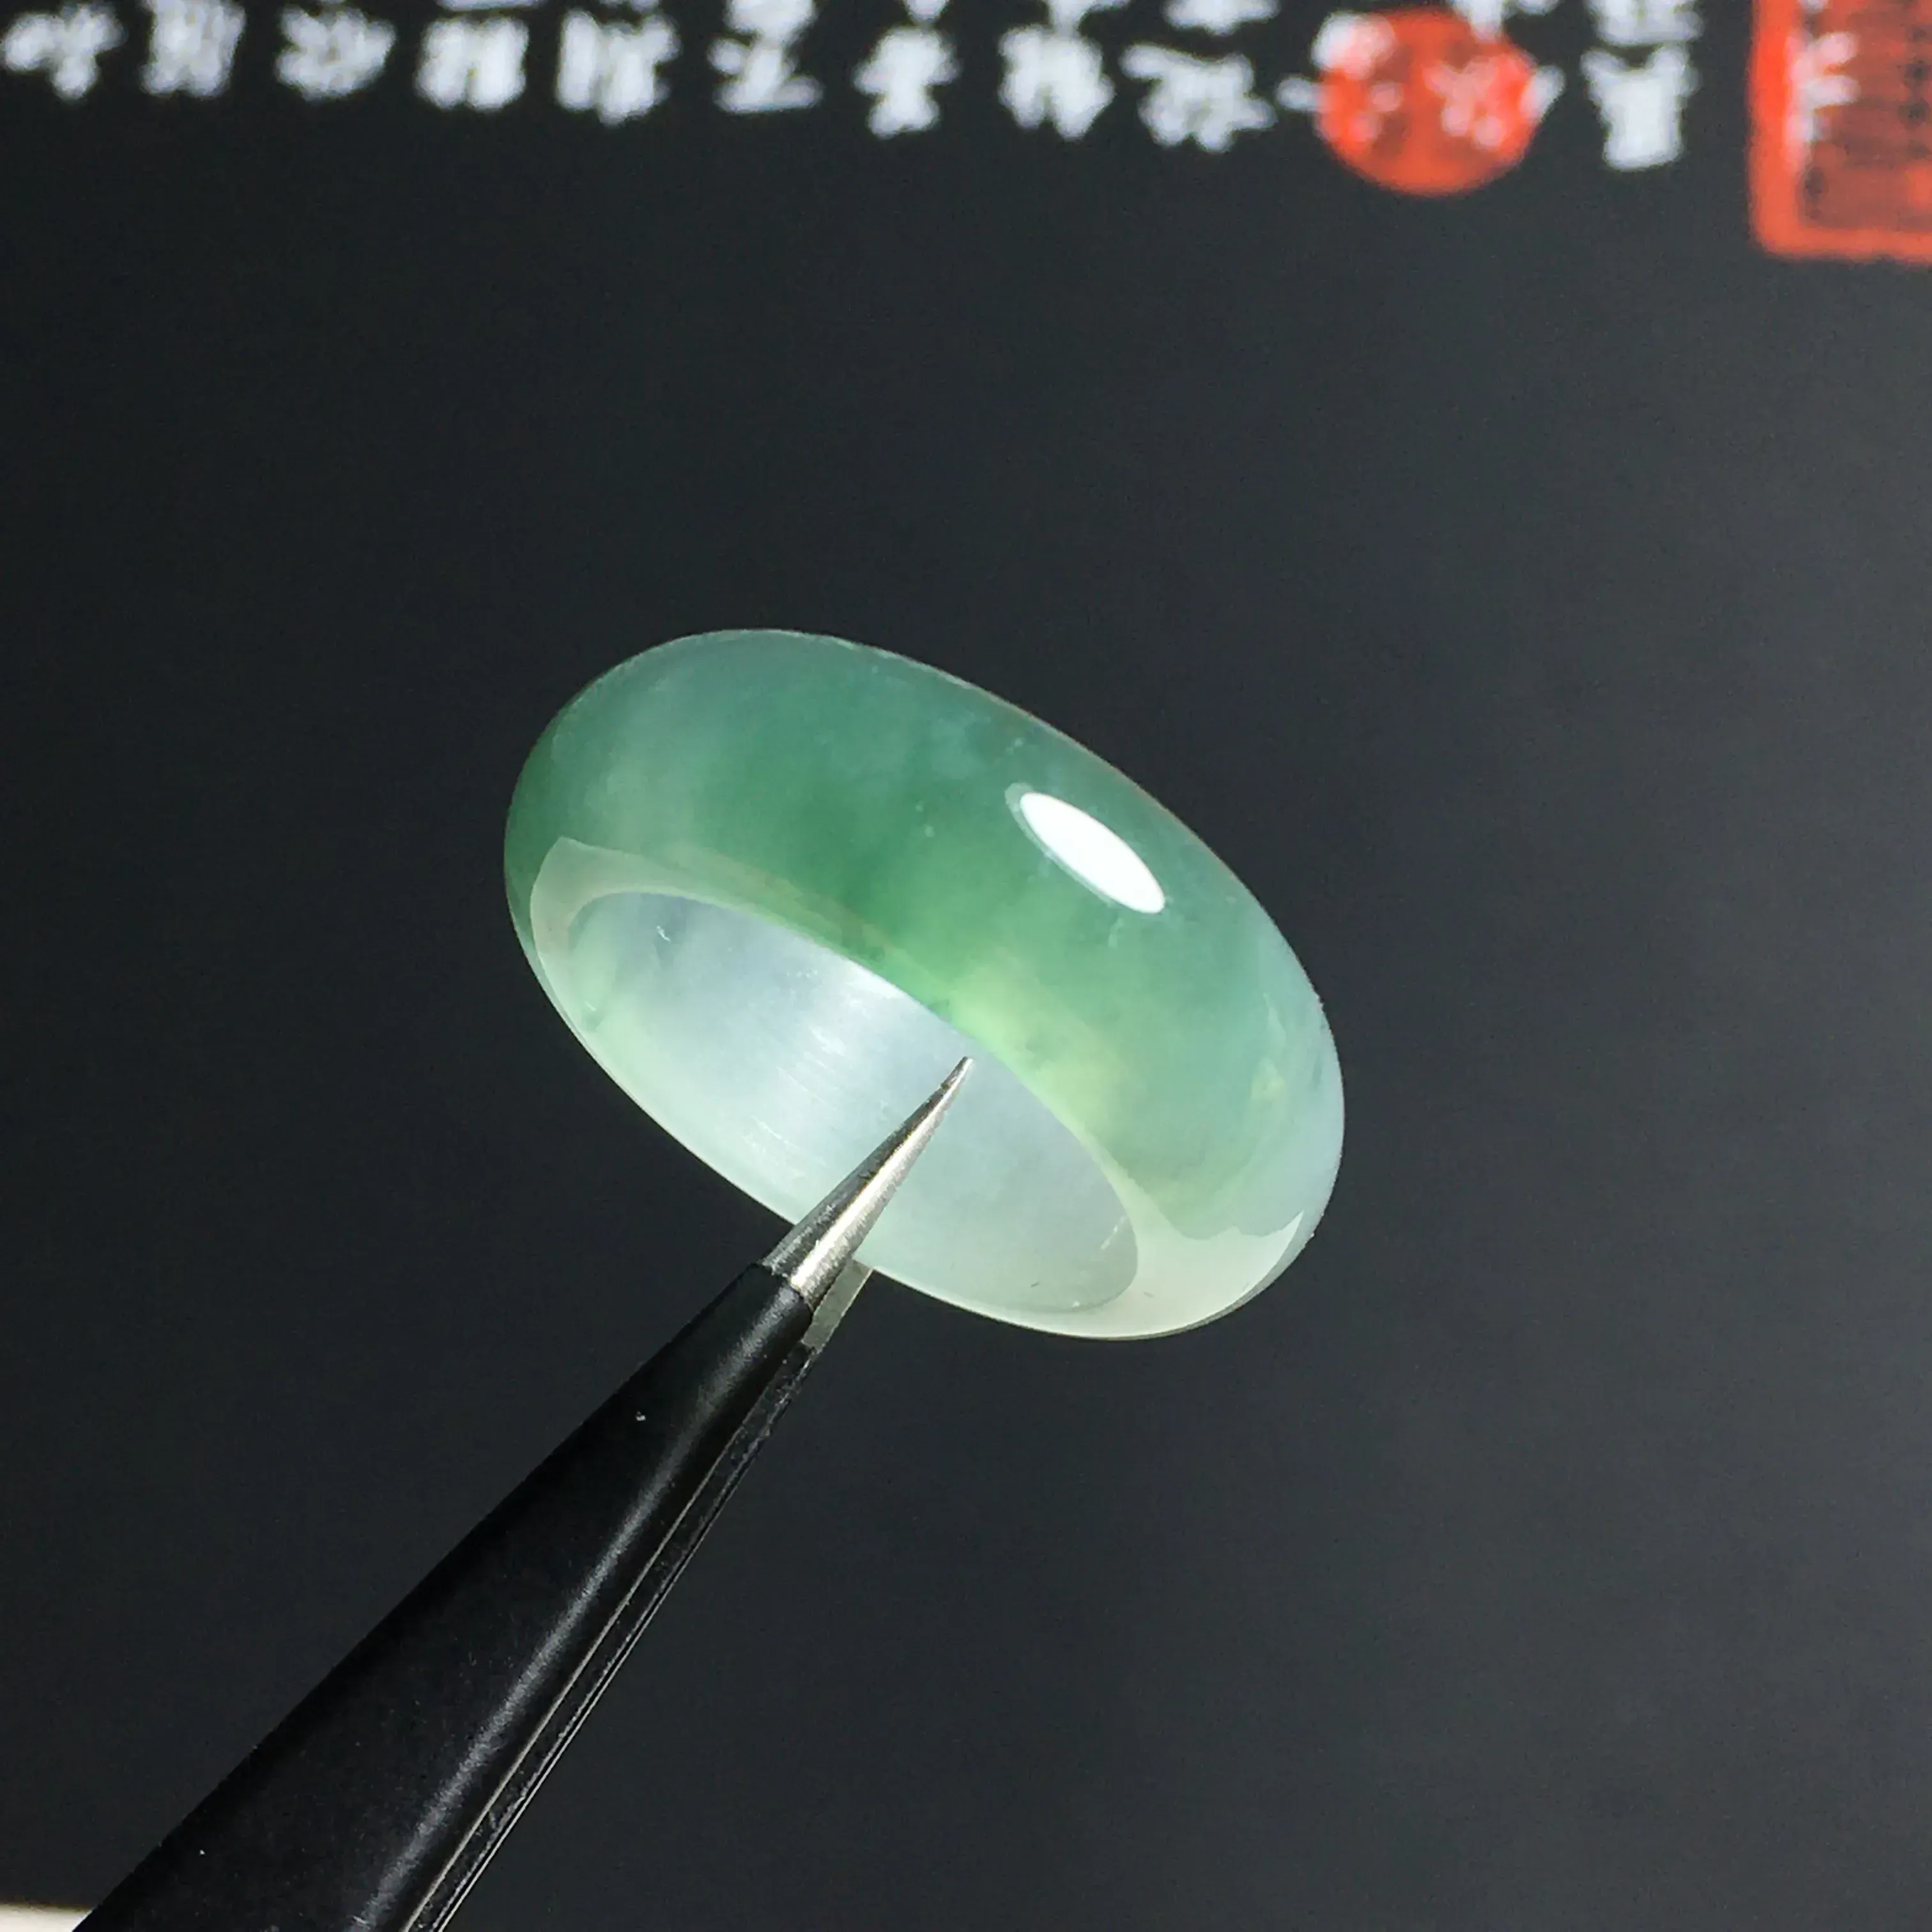 冰糯种晴绿指环 外径24宽7.5厚3毫米 内直径17.5毫米 种好通透 胶感十足 色泽亮丽